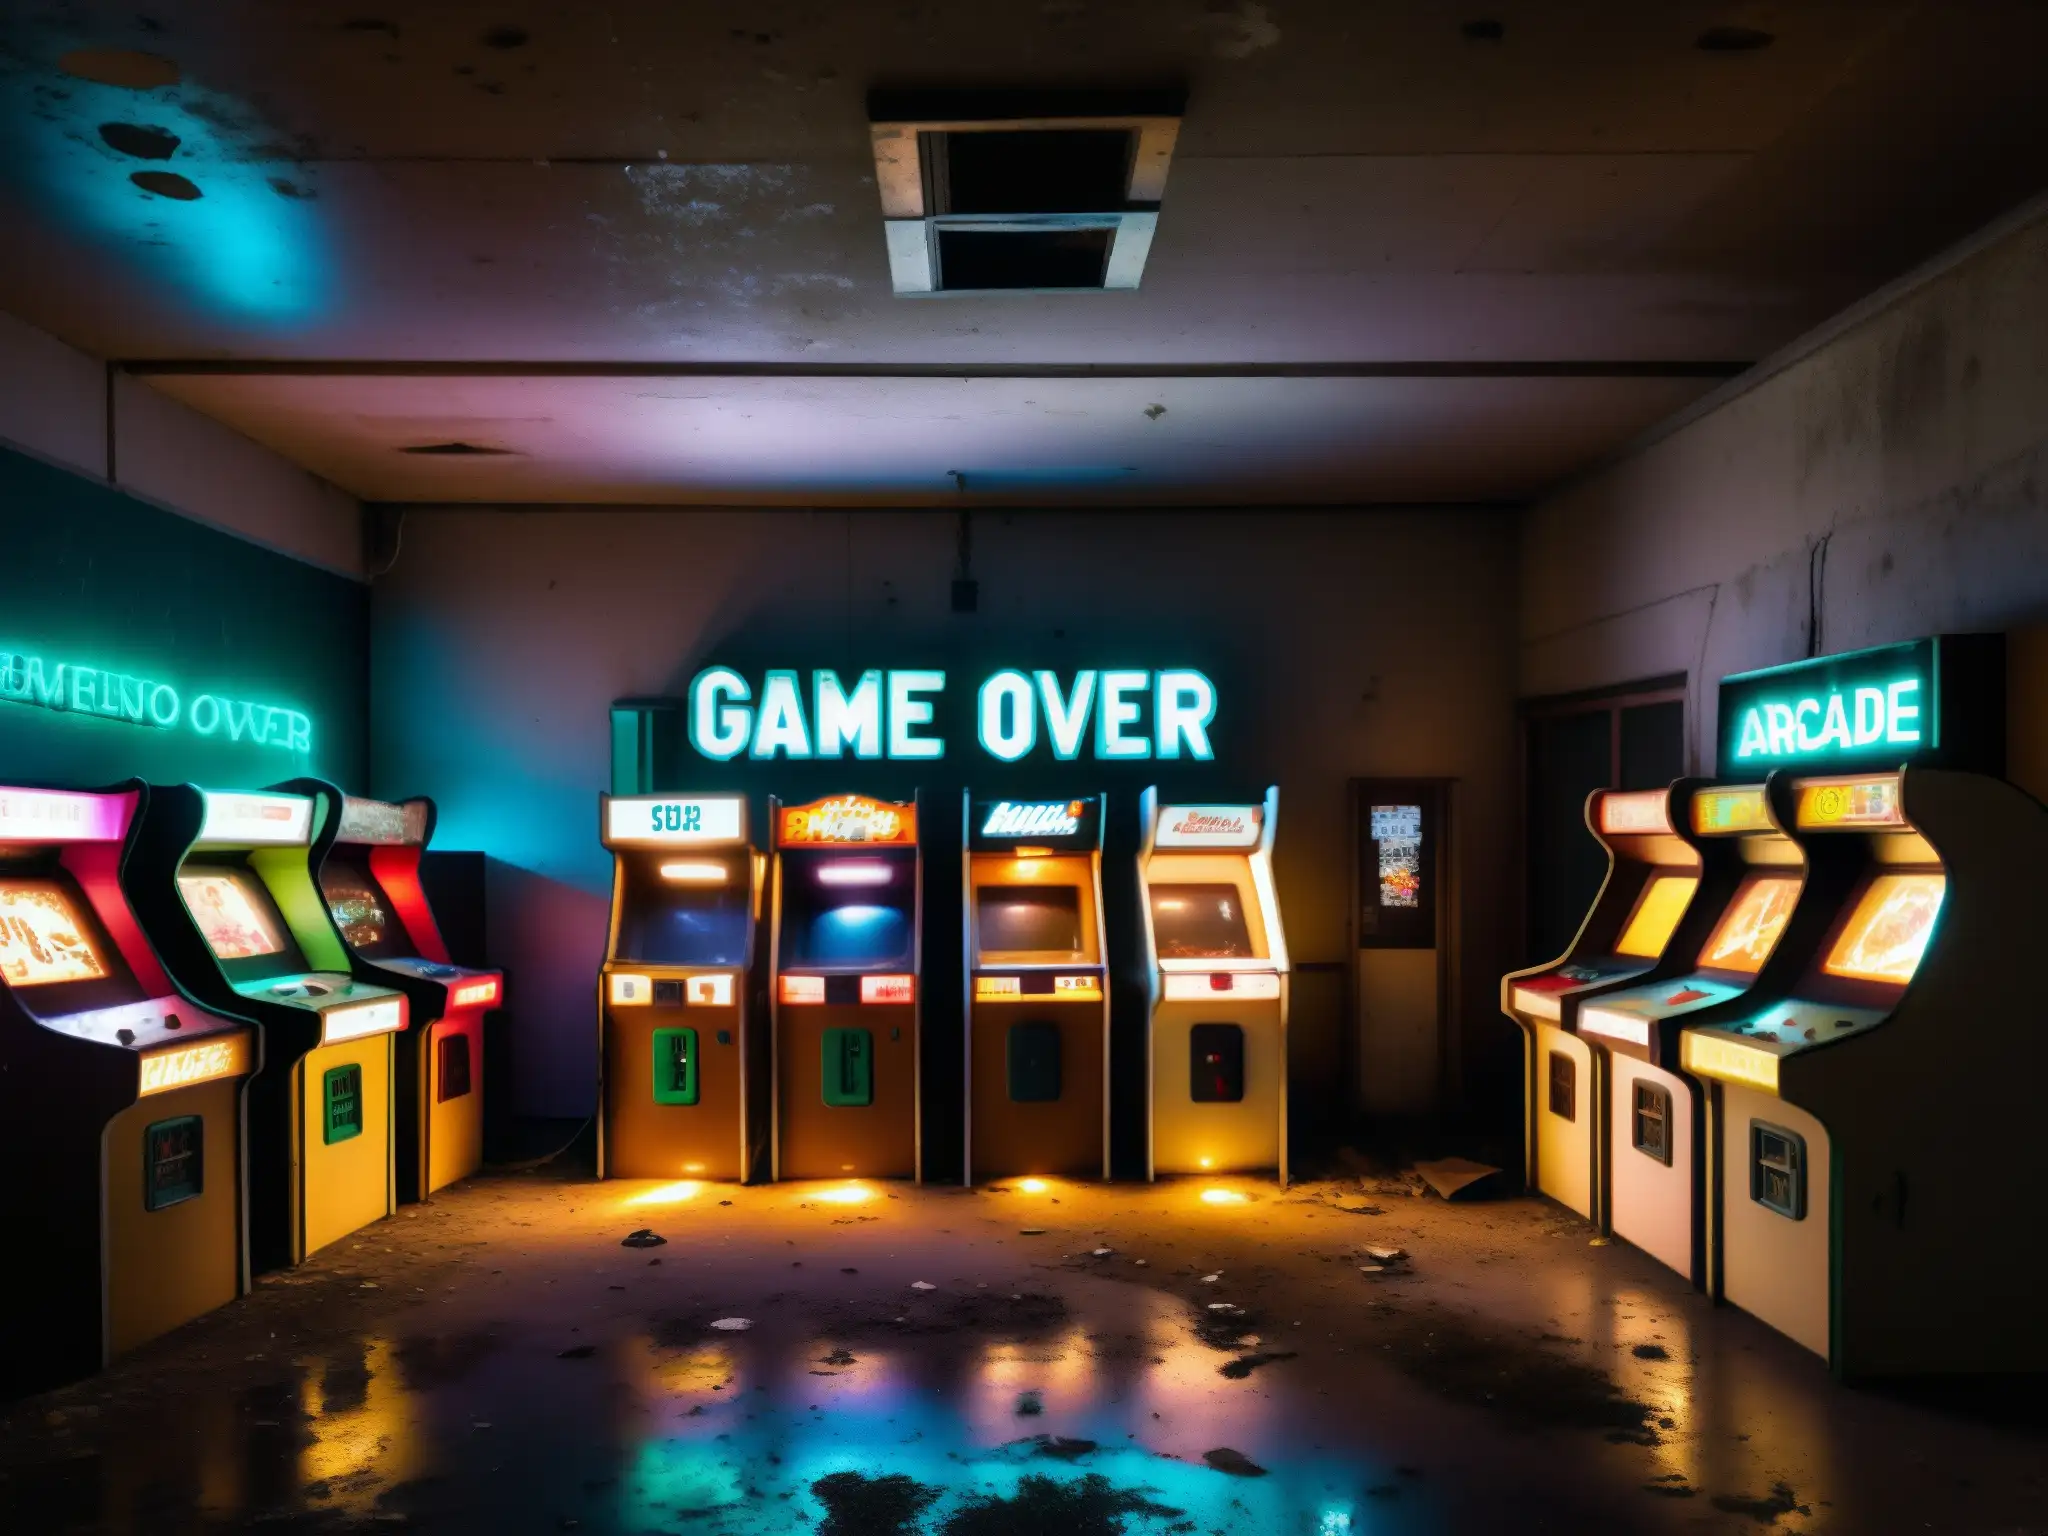 Un arcade abandonado y cubierto de maleza con gabinetes de juegos rotos y oxidados dispersos en un espacio poco iluminado